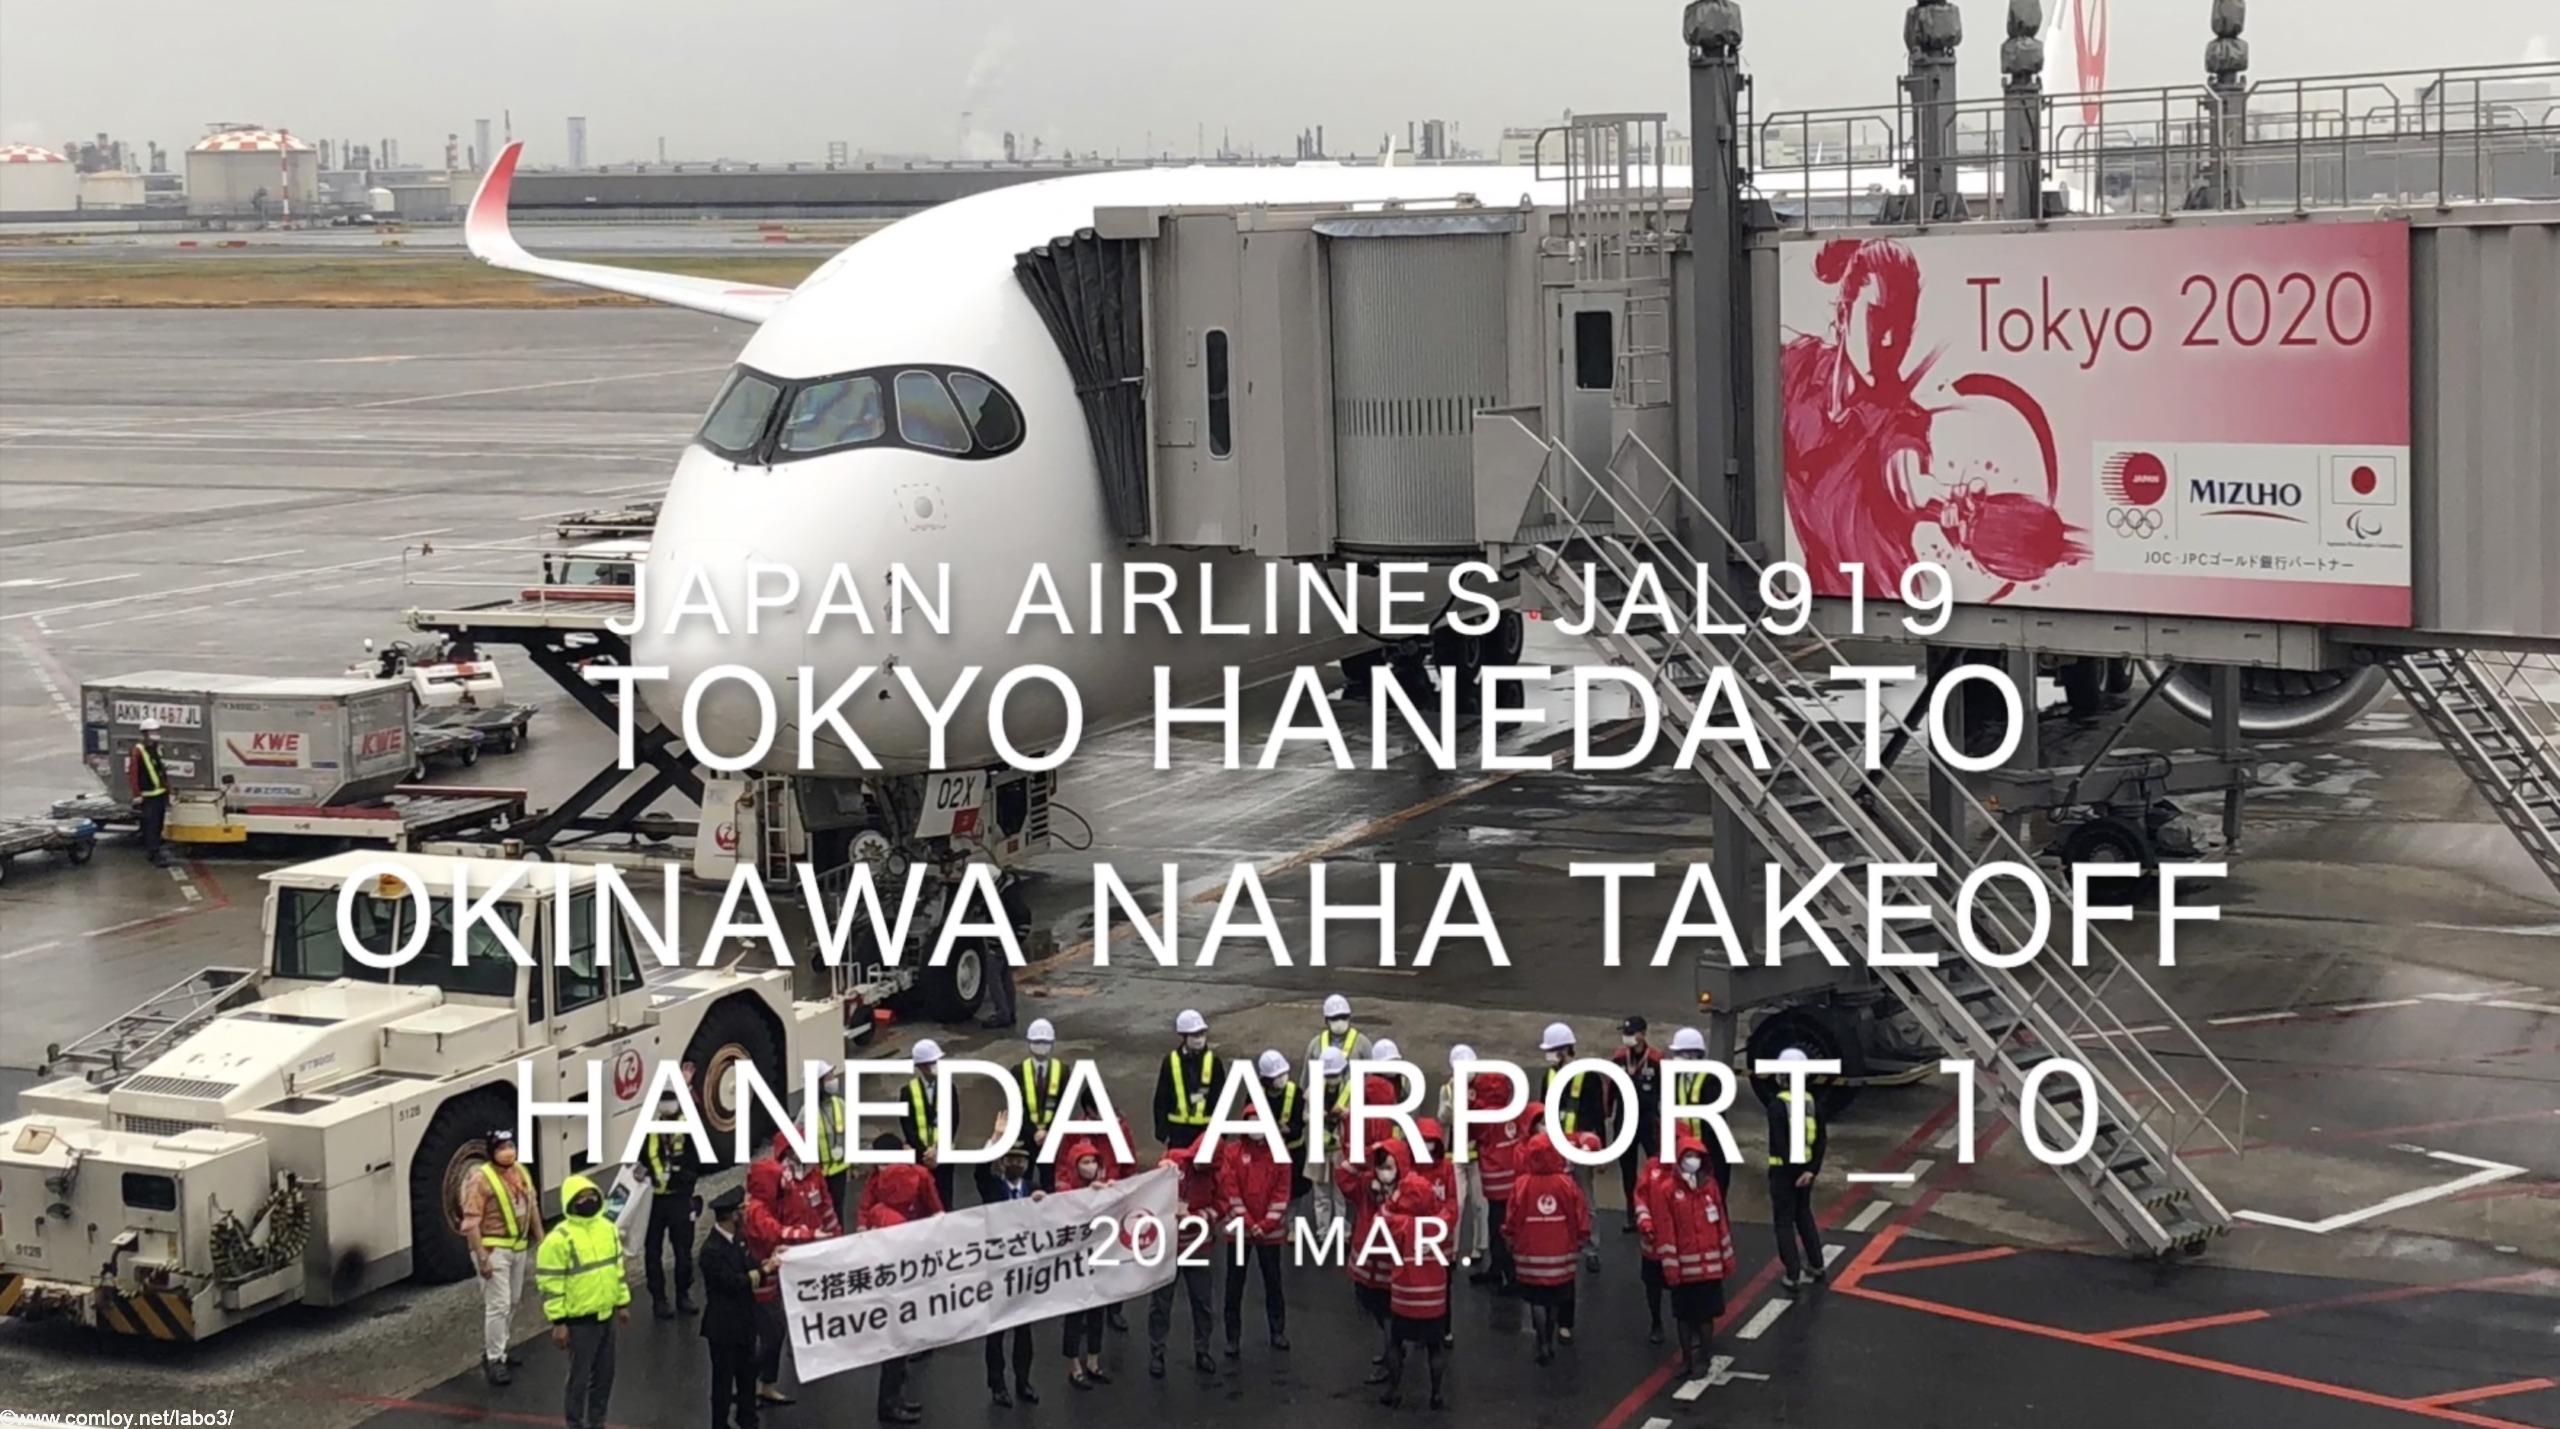 【機内から離着陸映像】2021 Mar Japan Airlines JAL919 TOKYO HANEDA to OKINAWA NAHA Takeoff HANEDA Airport_10